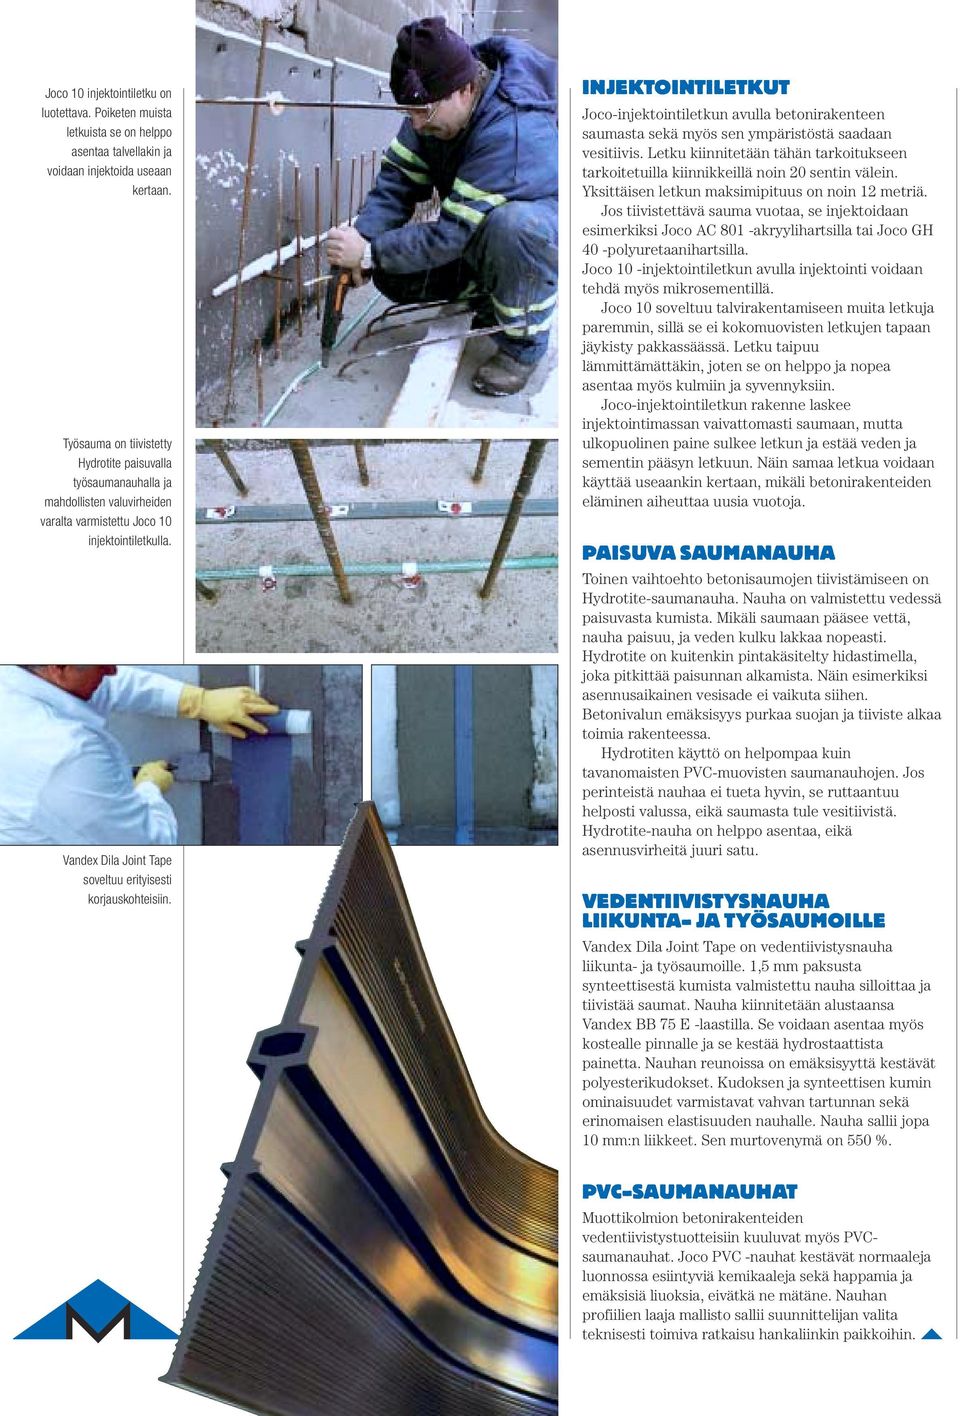 Vandex Dila Joint Tape soveltuu erityisesti korjauskohteisiin. INJEKTOINTILETKUT Joco-injektointiletkun avulla betonirakenteen saumasta sekä myös sen ympäristöstä saadaan vesitiivis.